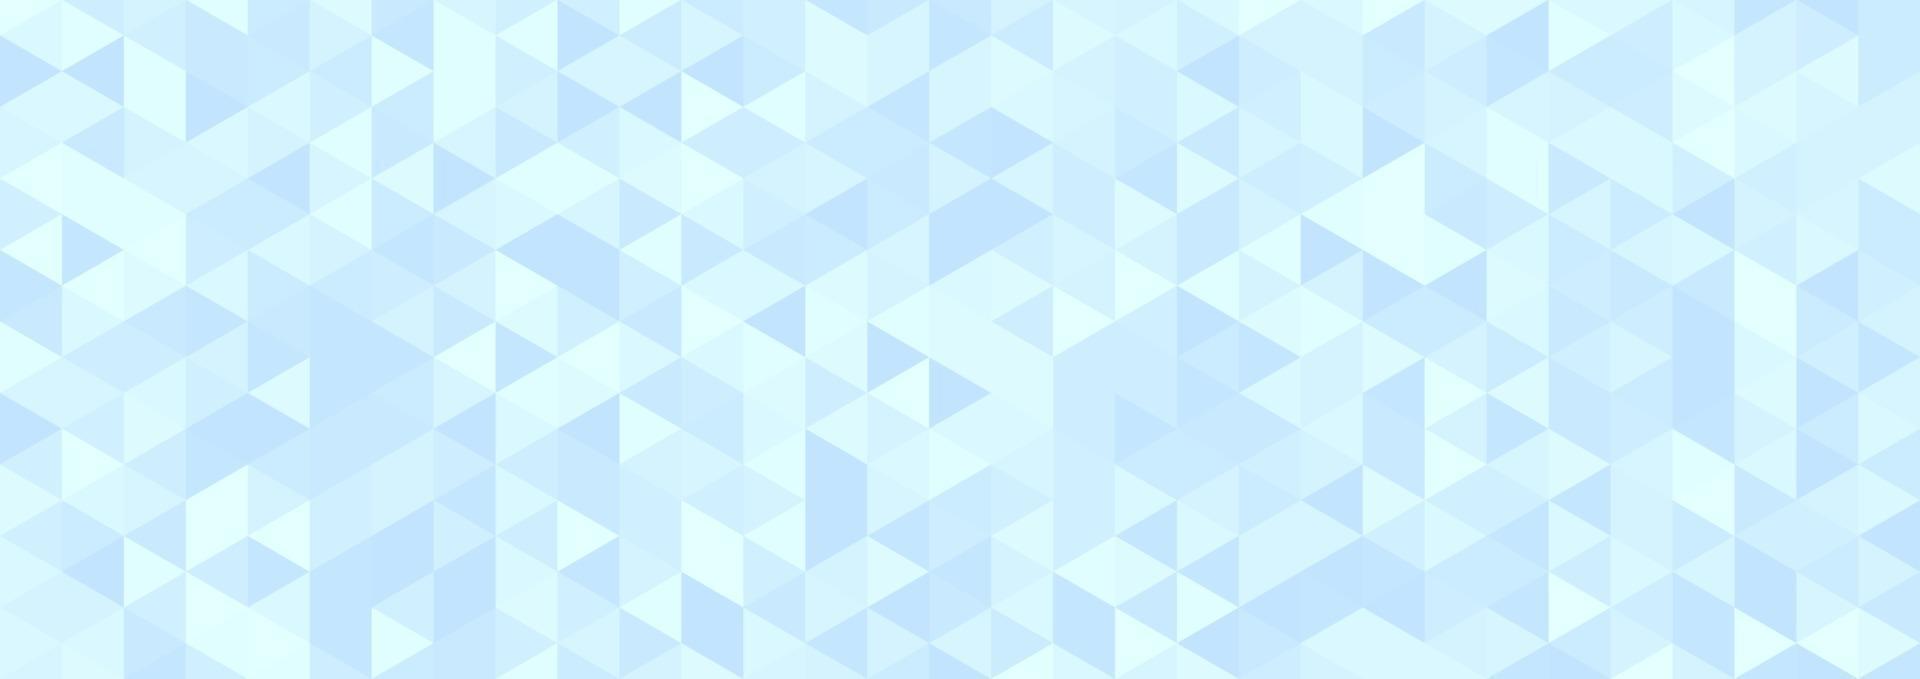 abstrato luz azul geométrica hexágono forma padrão de fundo. vetor para design de apresentação. terno para negócios, corporativo, instituição, festa, festivo, seminário e palestras. ilustração vetorial